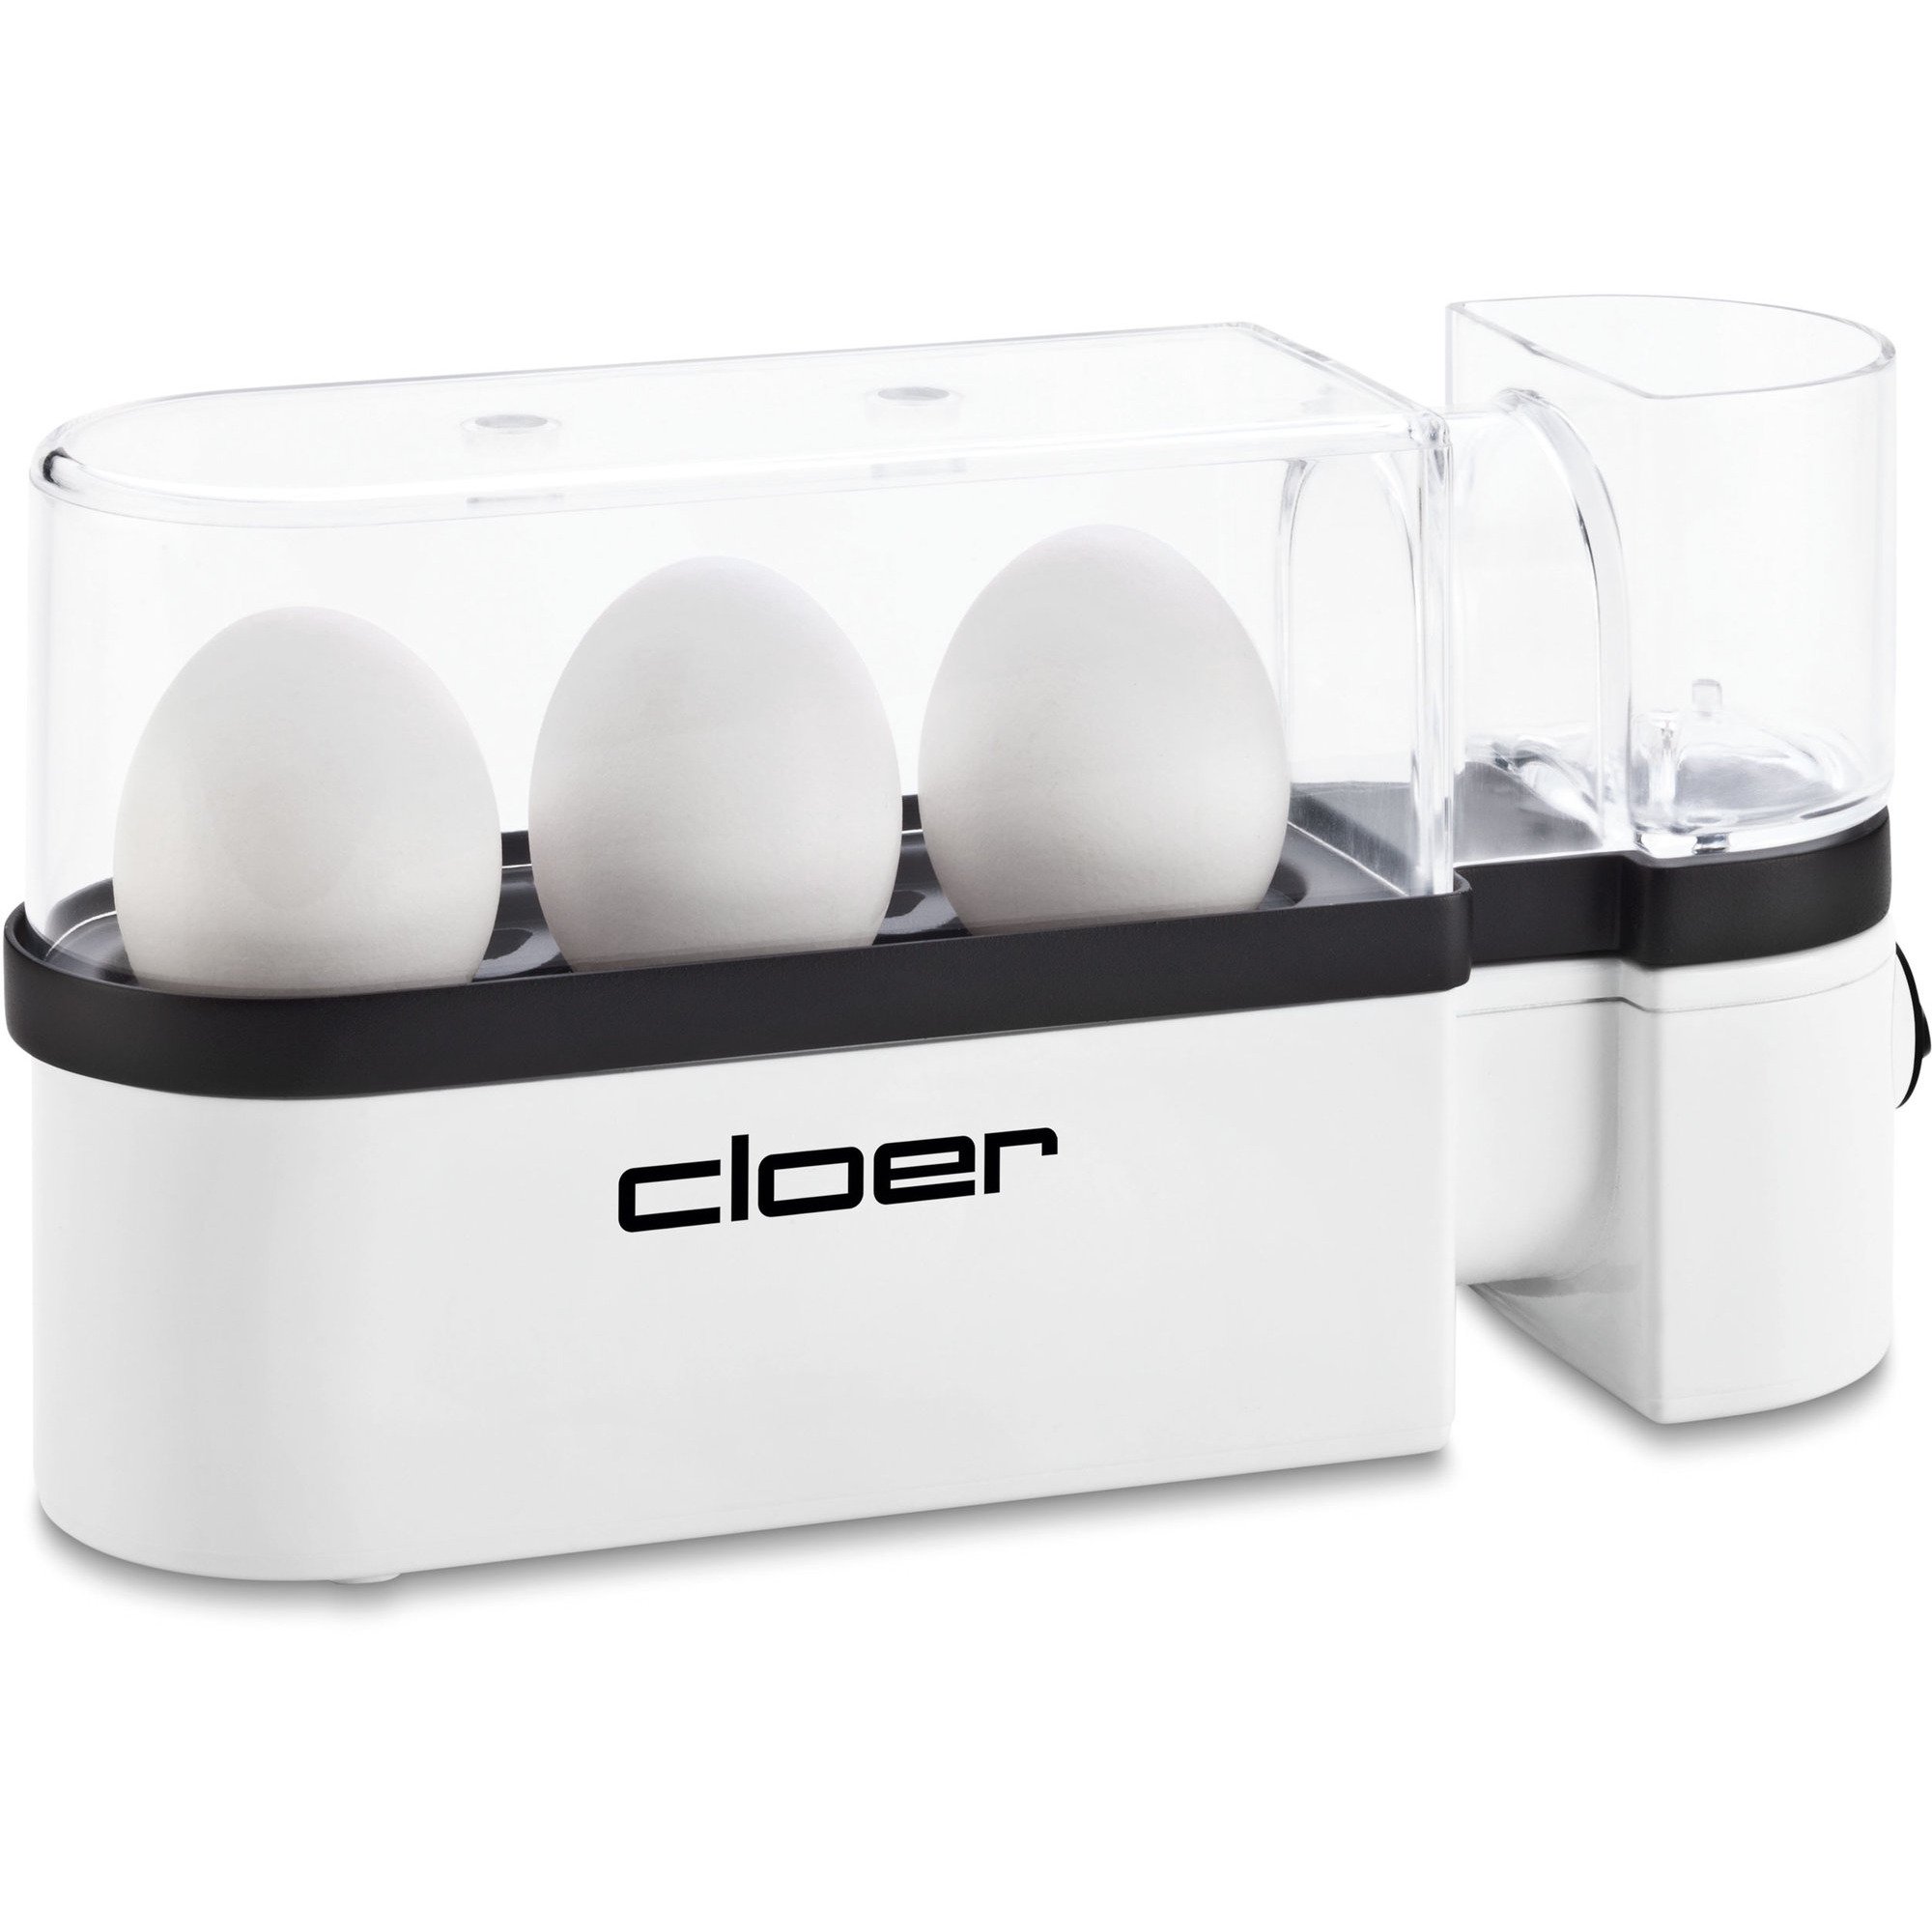 Cloer Äggkokare 3 ägg – Vit